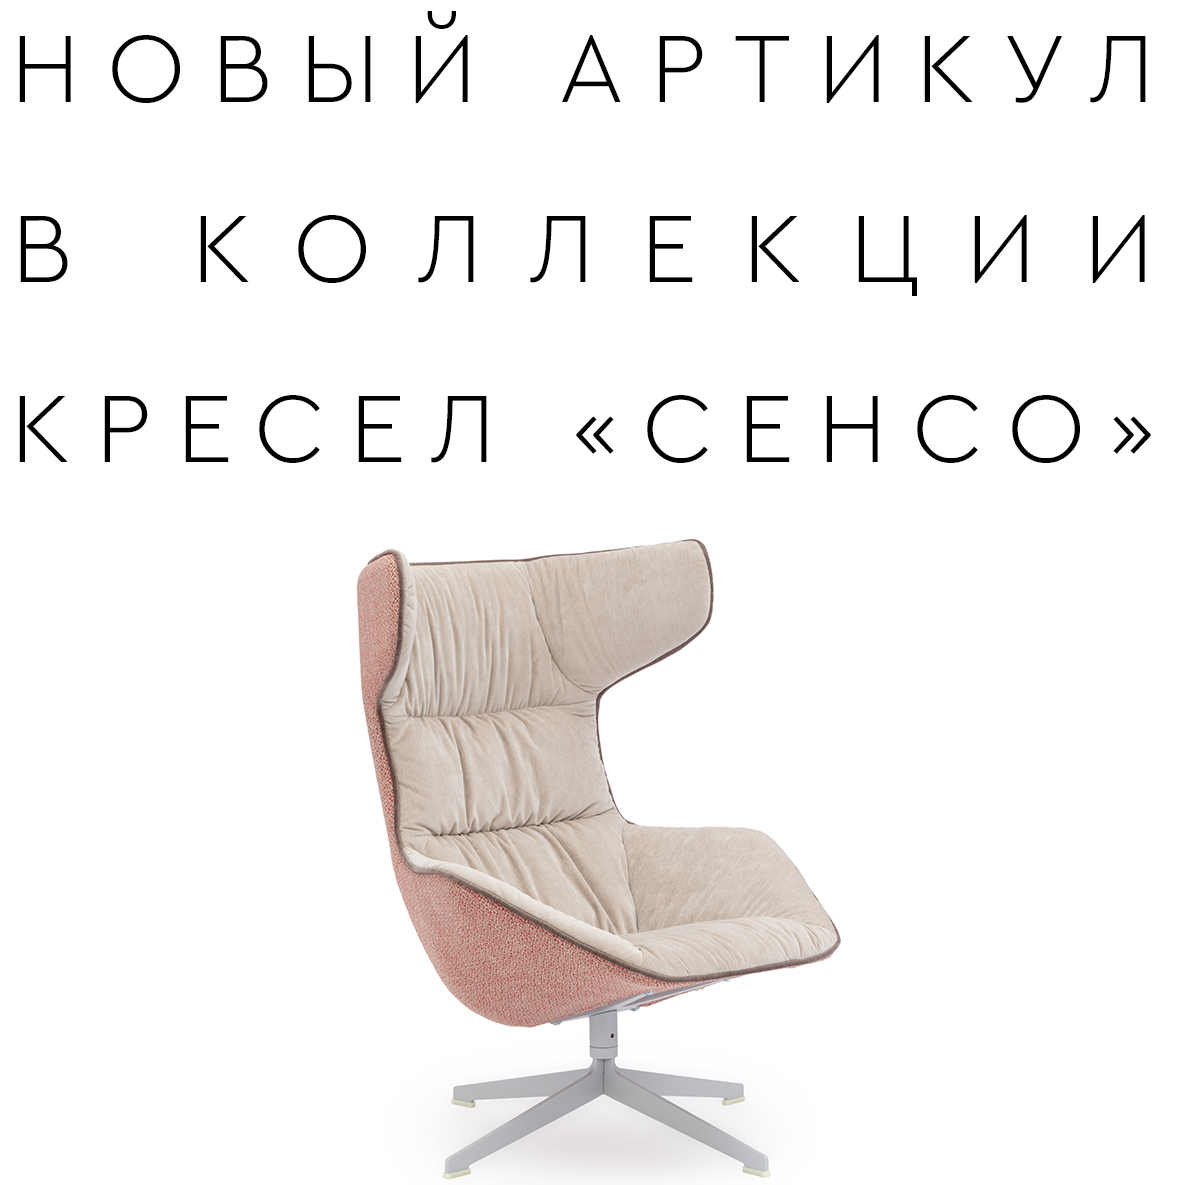 Новое кресло «СЕНСО»